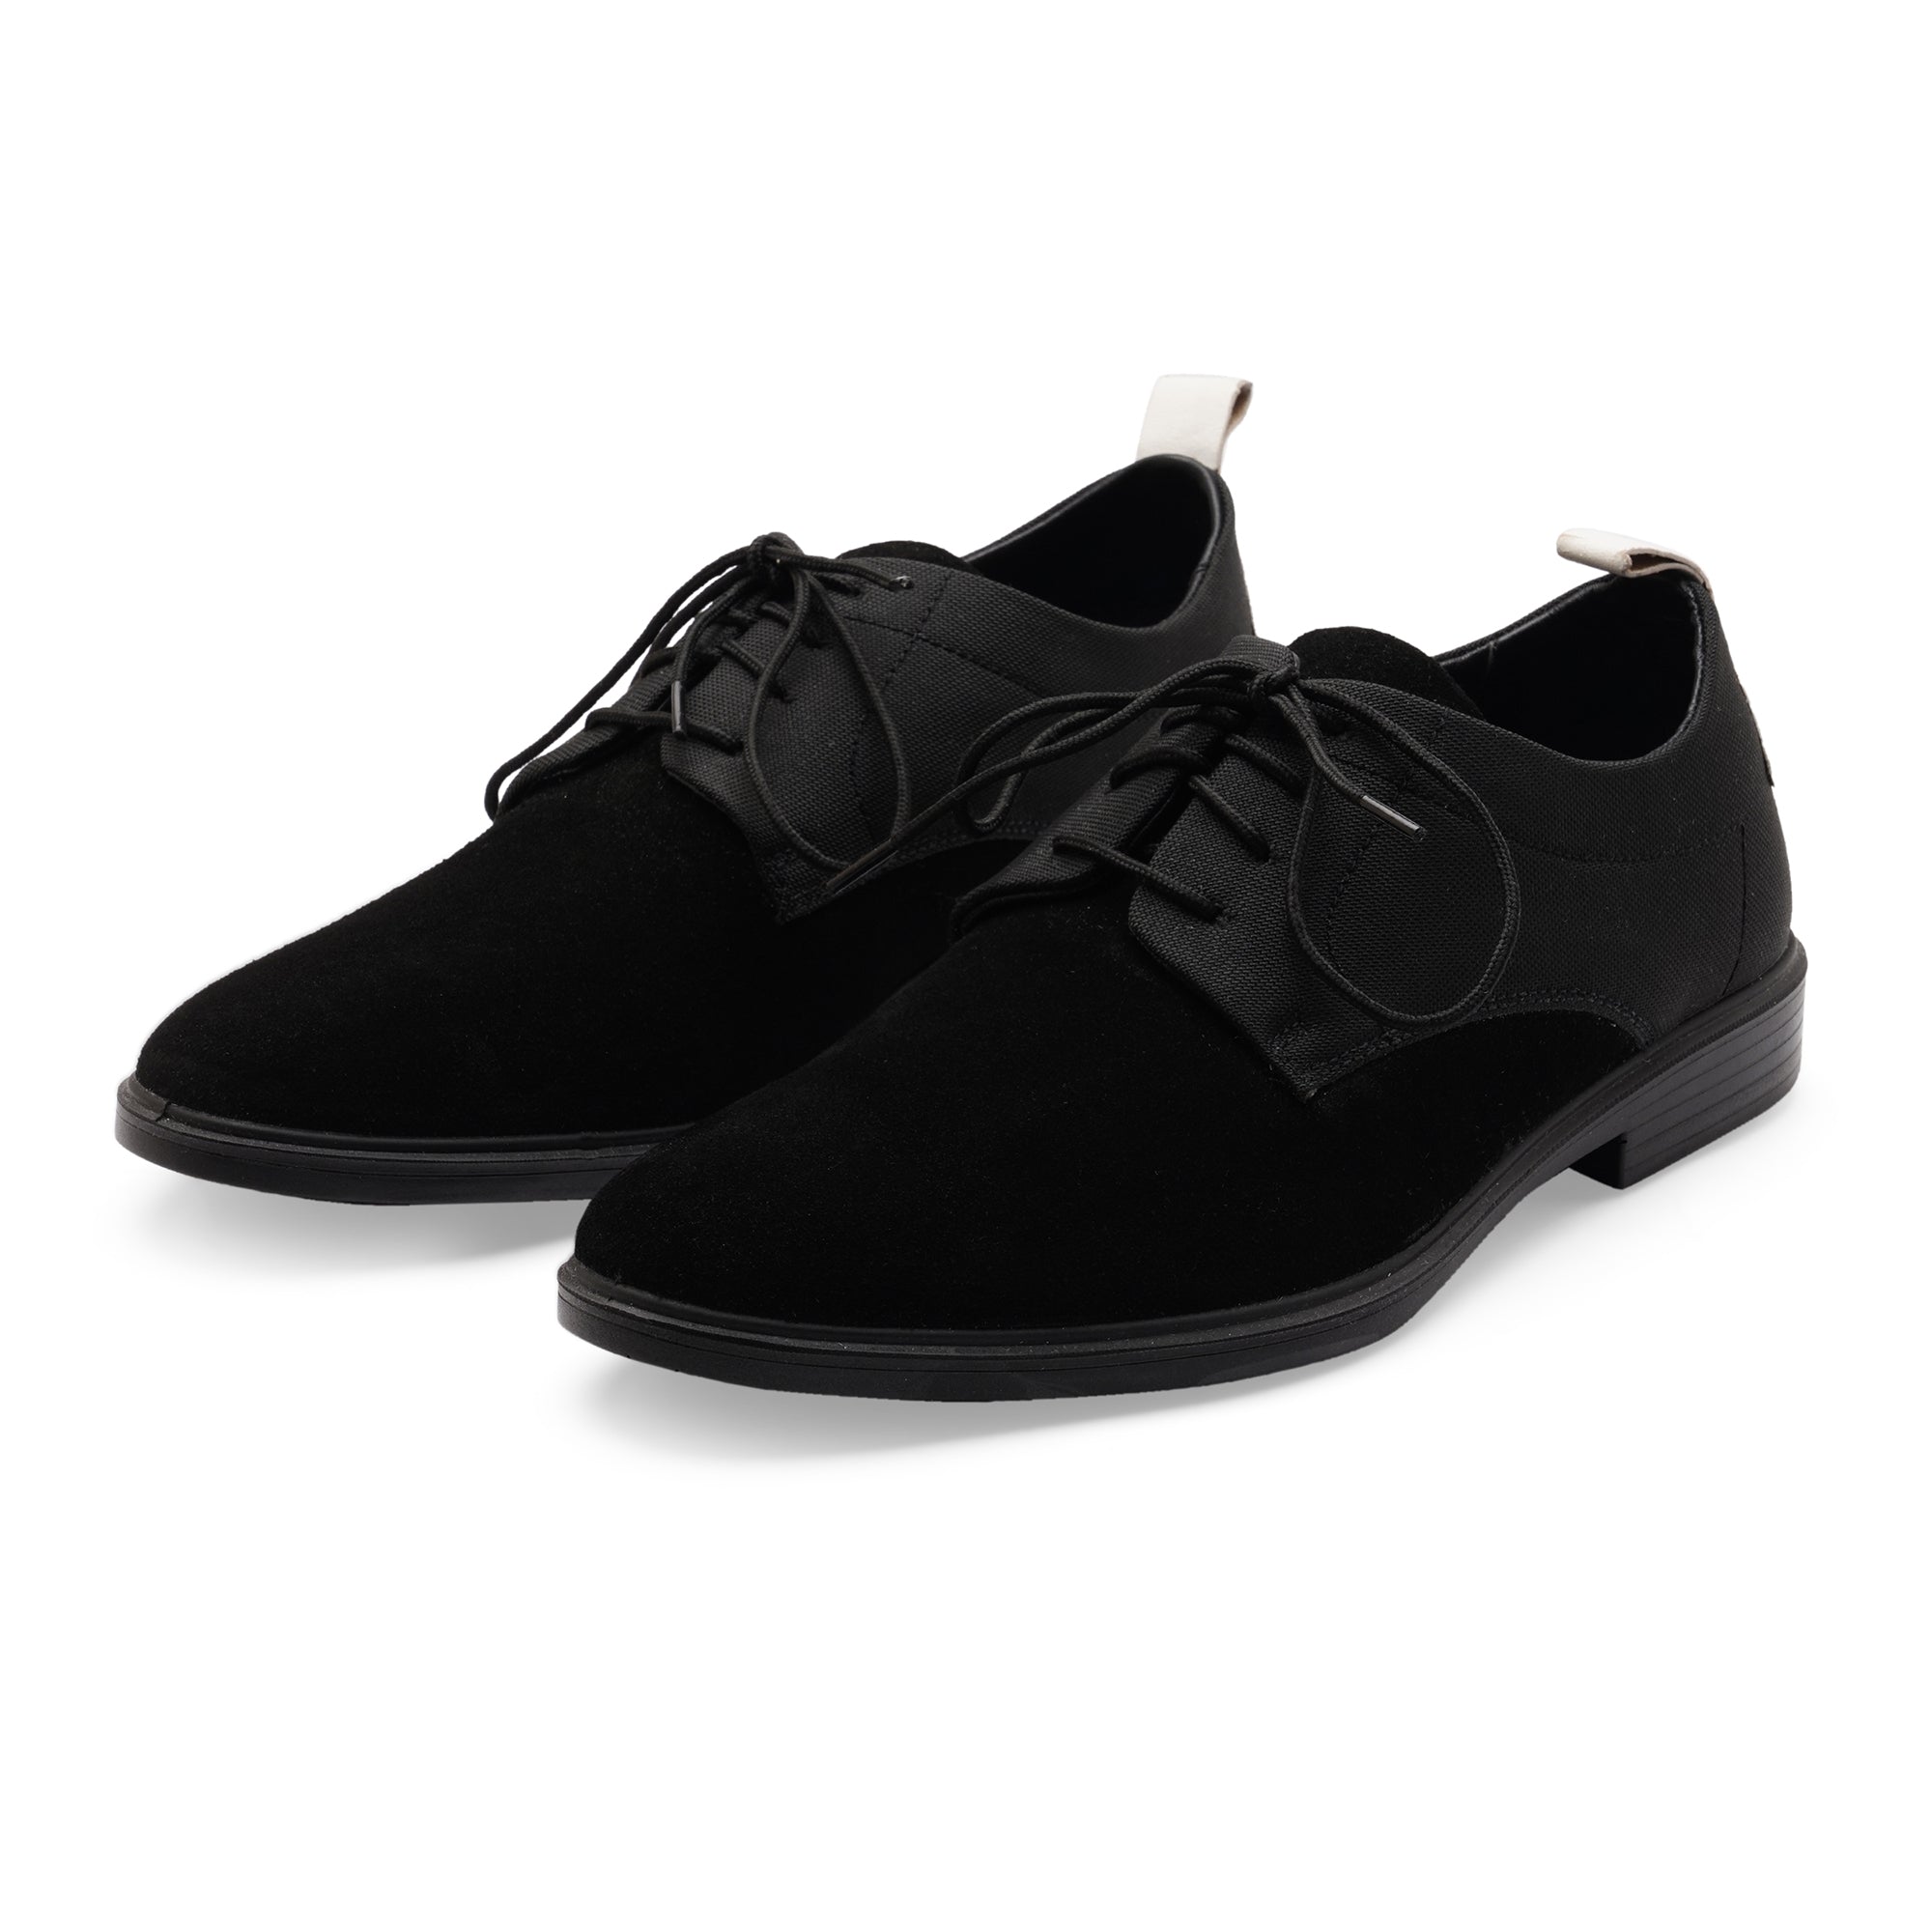 City EC-01 Derby Men's Black Casual Shoes